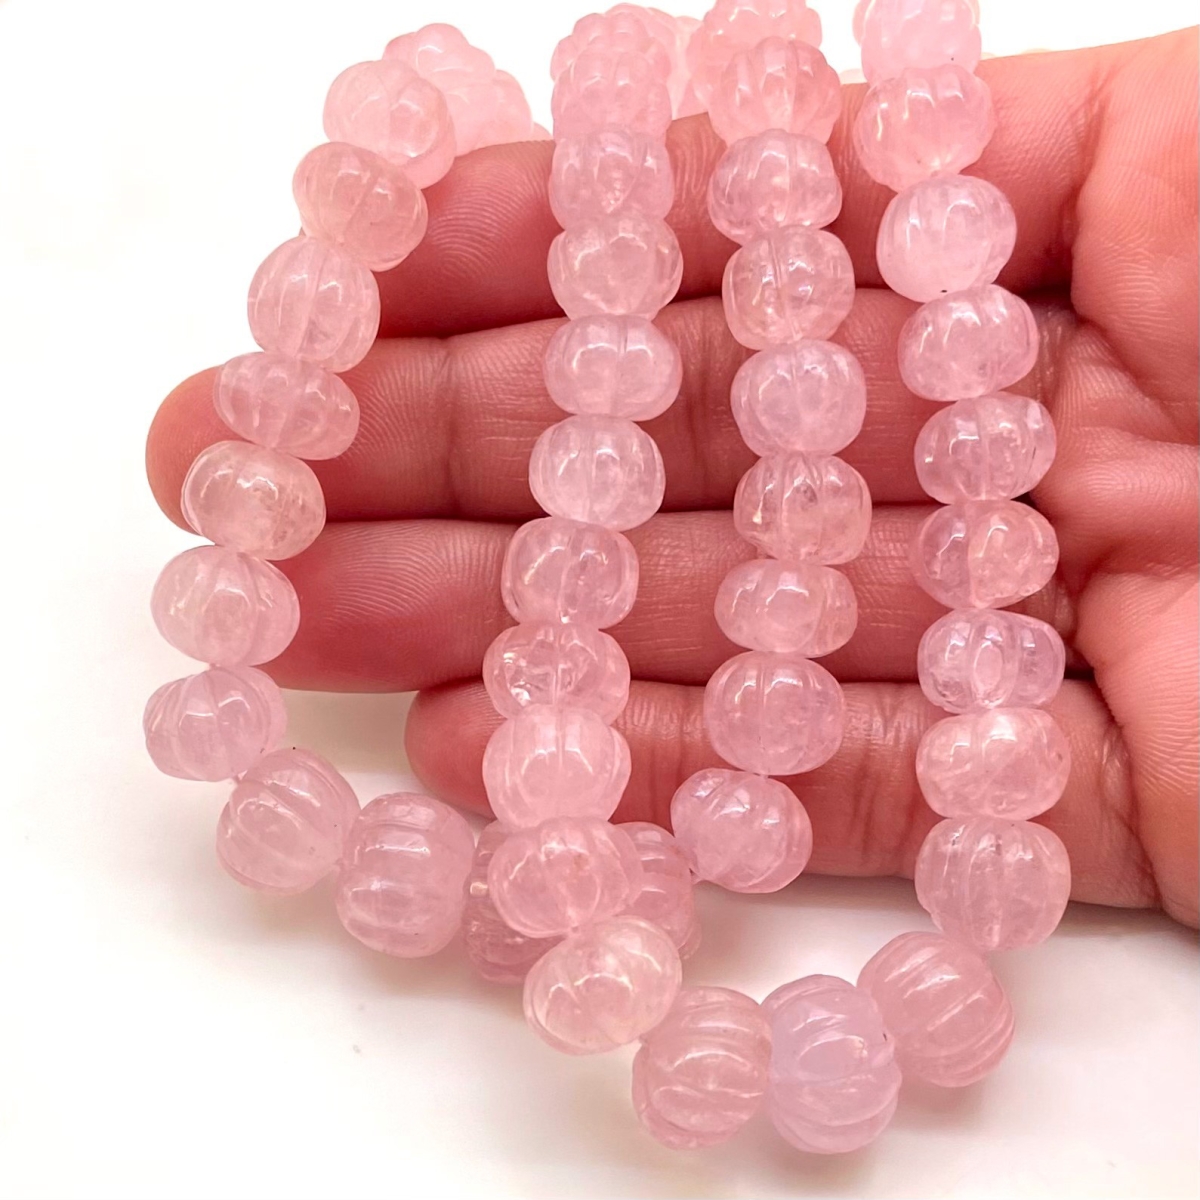 Strawberry Quartz 7-13mm Carved Melon A+ Grade Gemstone Beads